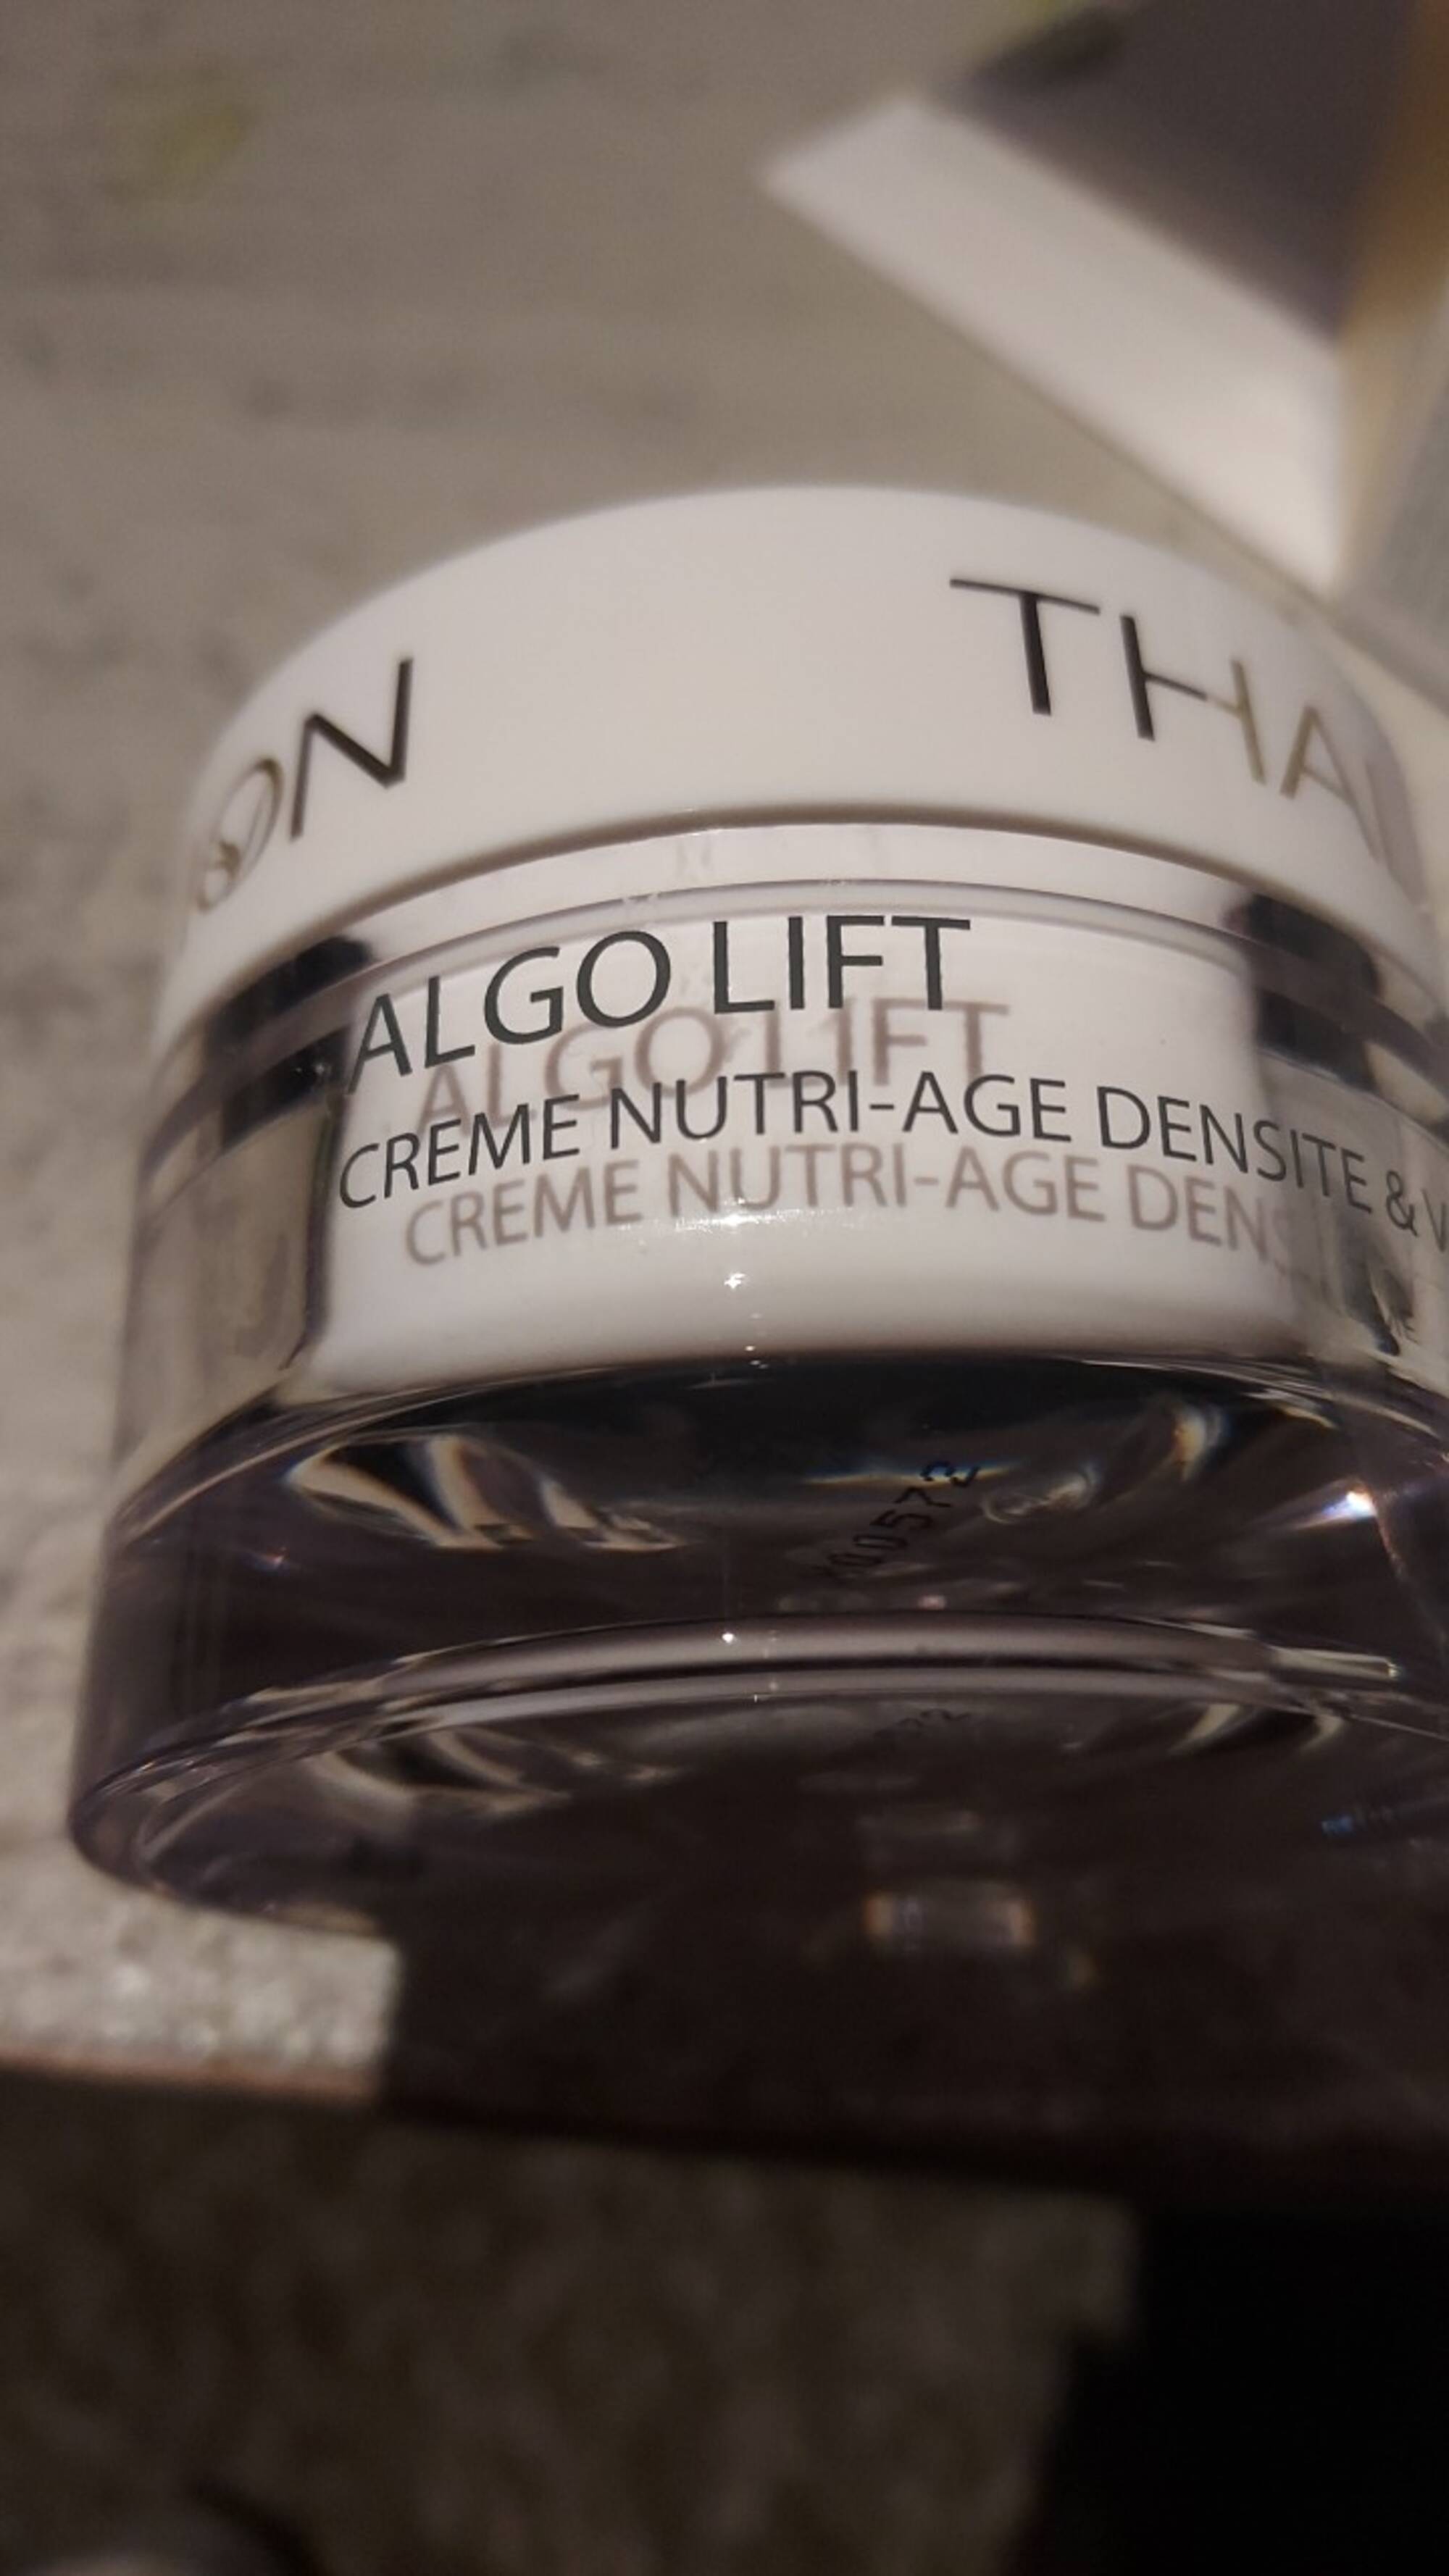 THALION - Algo lift - Crème nutri-age densité & volume